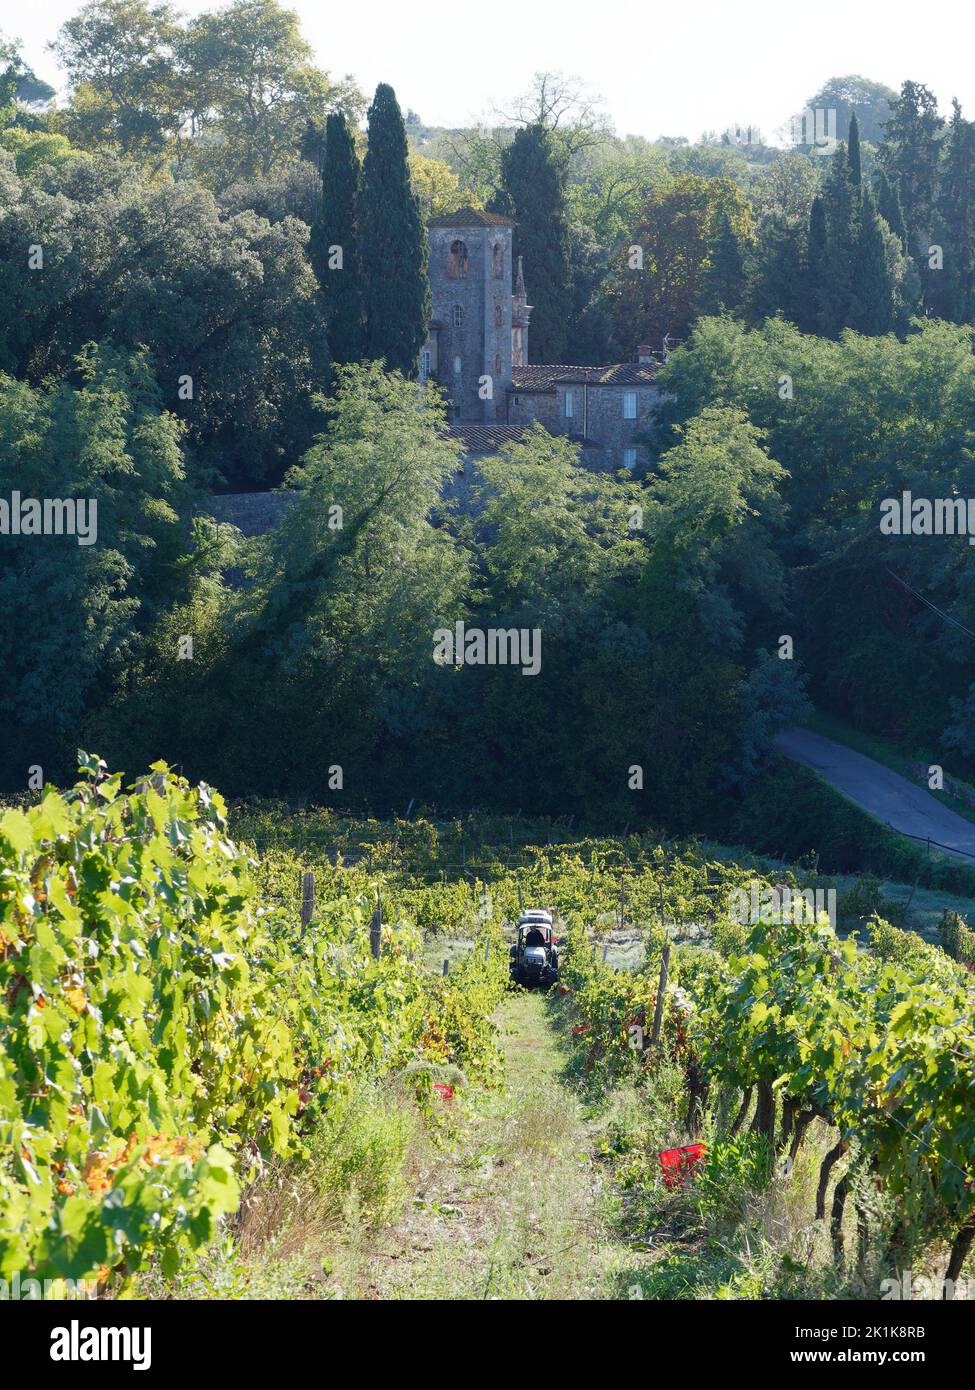 Vendange. Tracteur dans un vignoble de Camigliano près de Lucca en Toscane, Italie. Les boîtes rouges sont prêtes à être remplies de raisins. Tour historique derrière. Banque D'Images